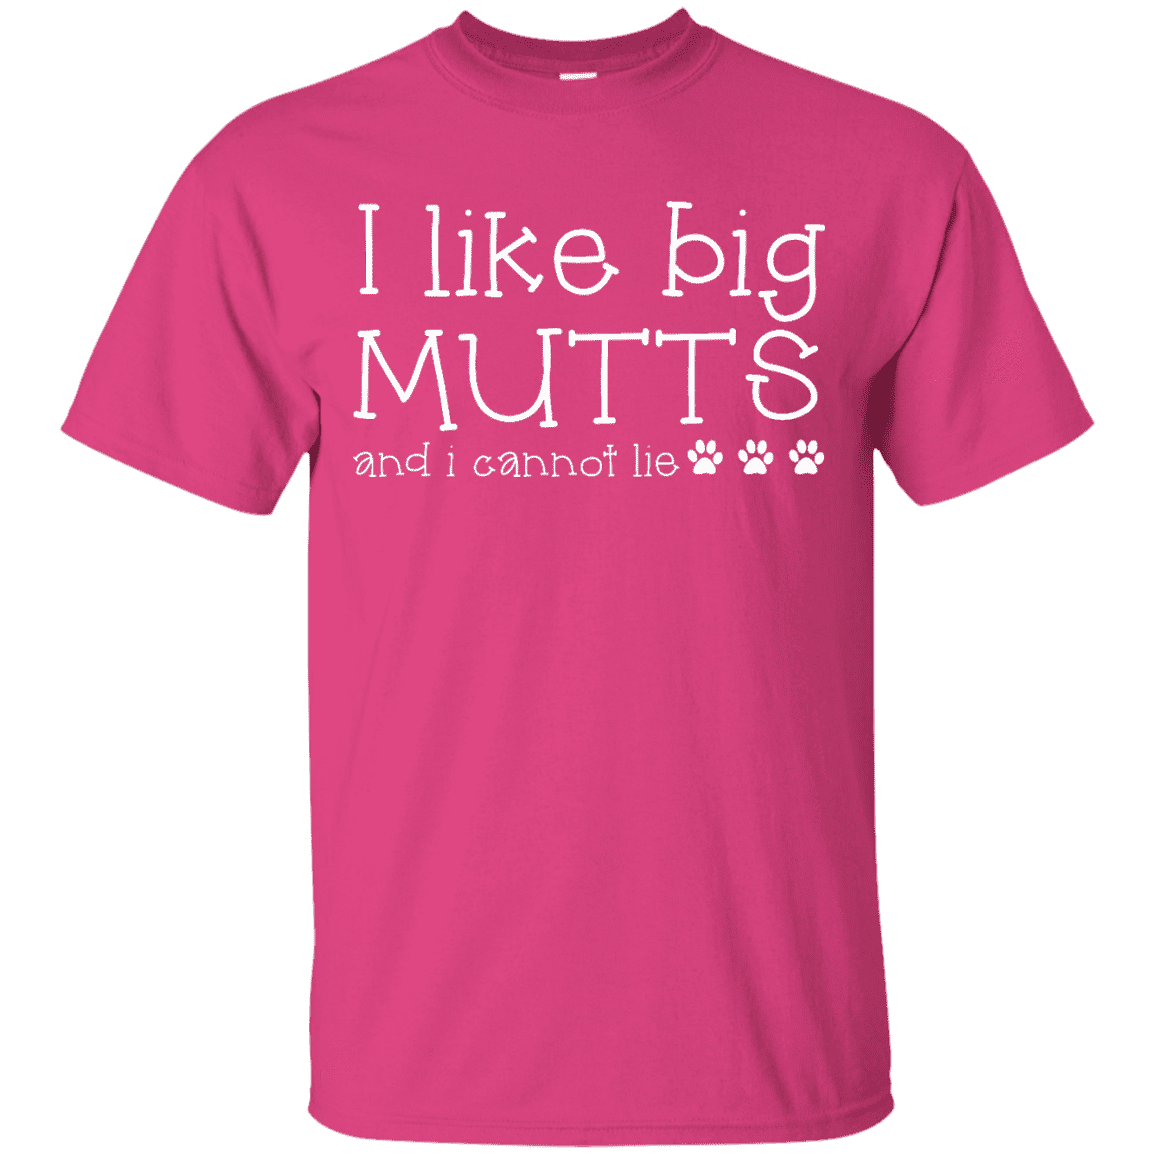 I Like Big Mutts - T Shirt.